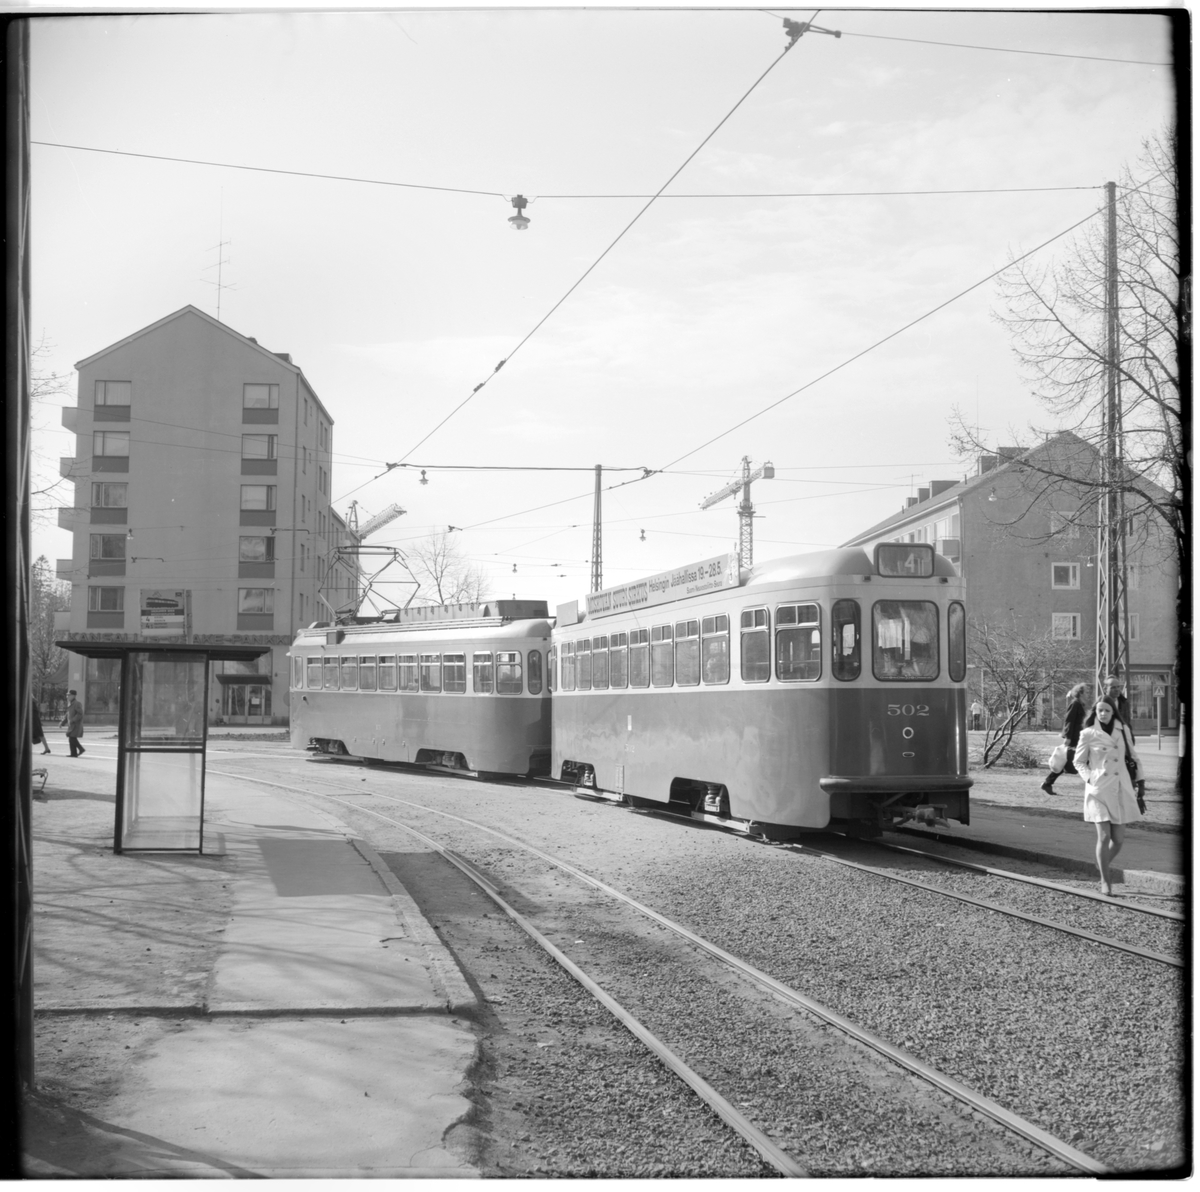 Helsingin Kaupupungin Liikennelaitos, HKL HP II 502 (II) linje 4 på hållplats Bredviksplatsen i Munksnäs.